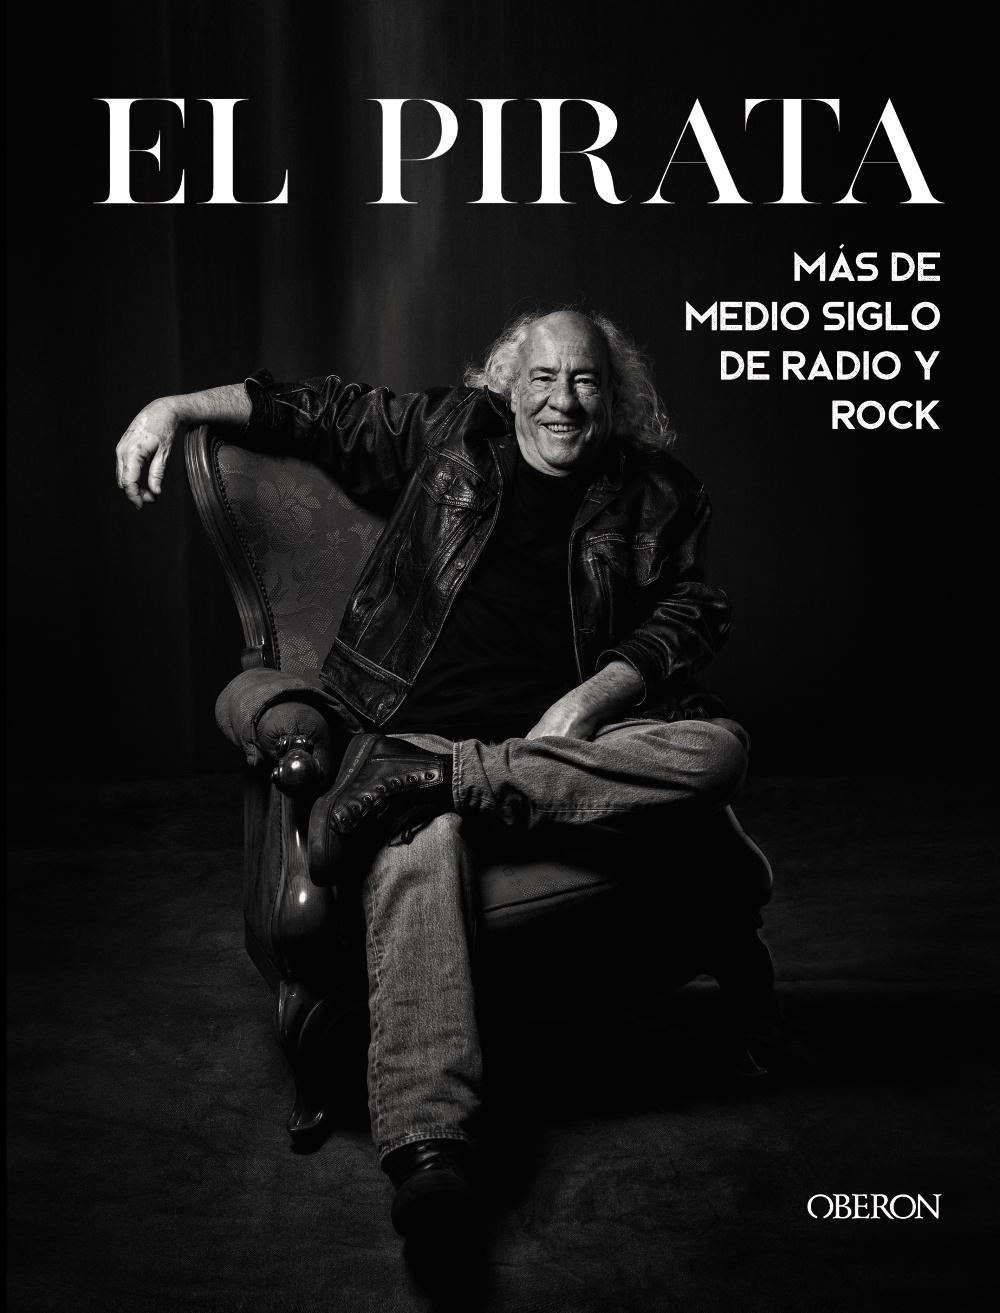 El Pirata "Más de Medio Siglo de Radio y Rock". 